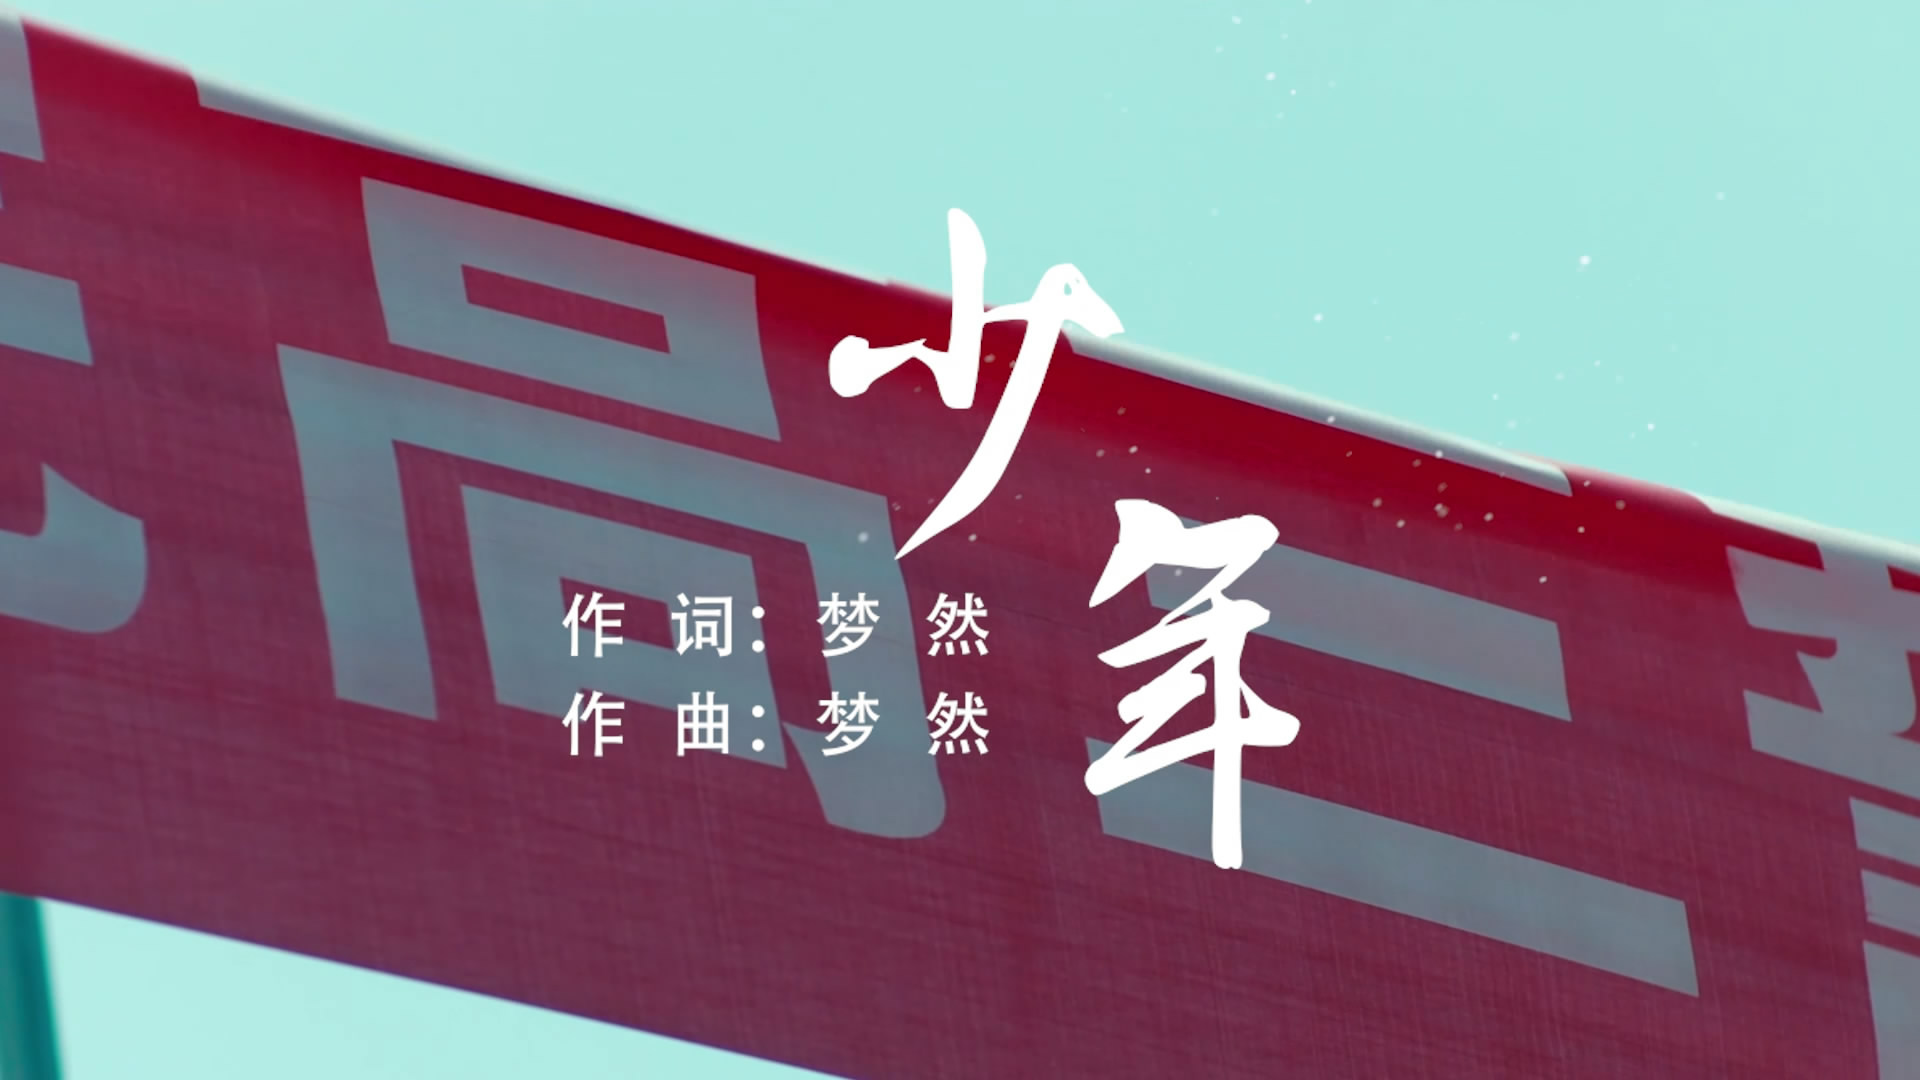 少年 梦然电影版MV字幕配乐伴奏舞台演出LED背景大屏幕视频素材TV